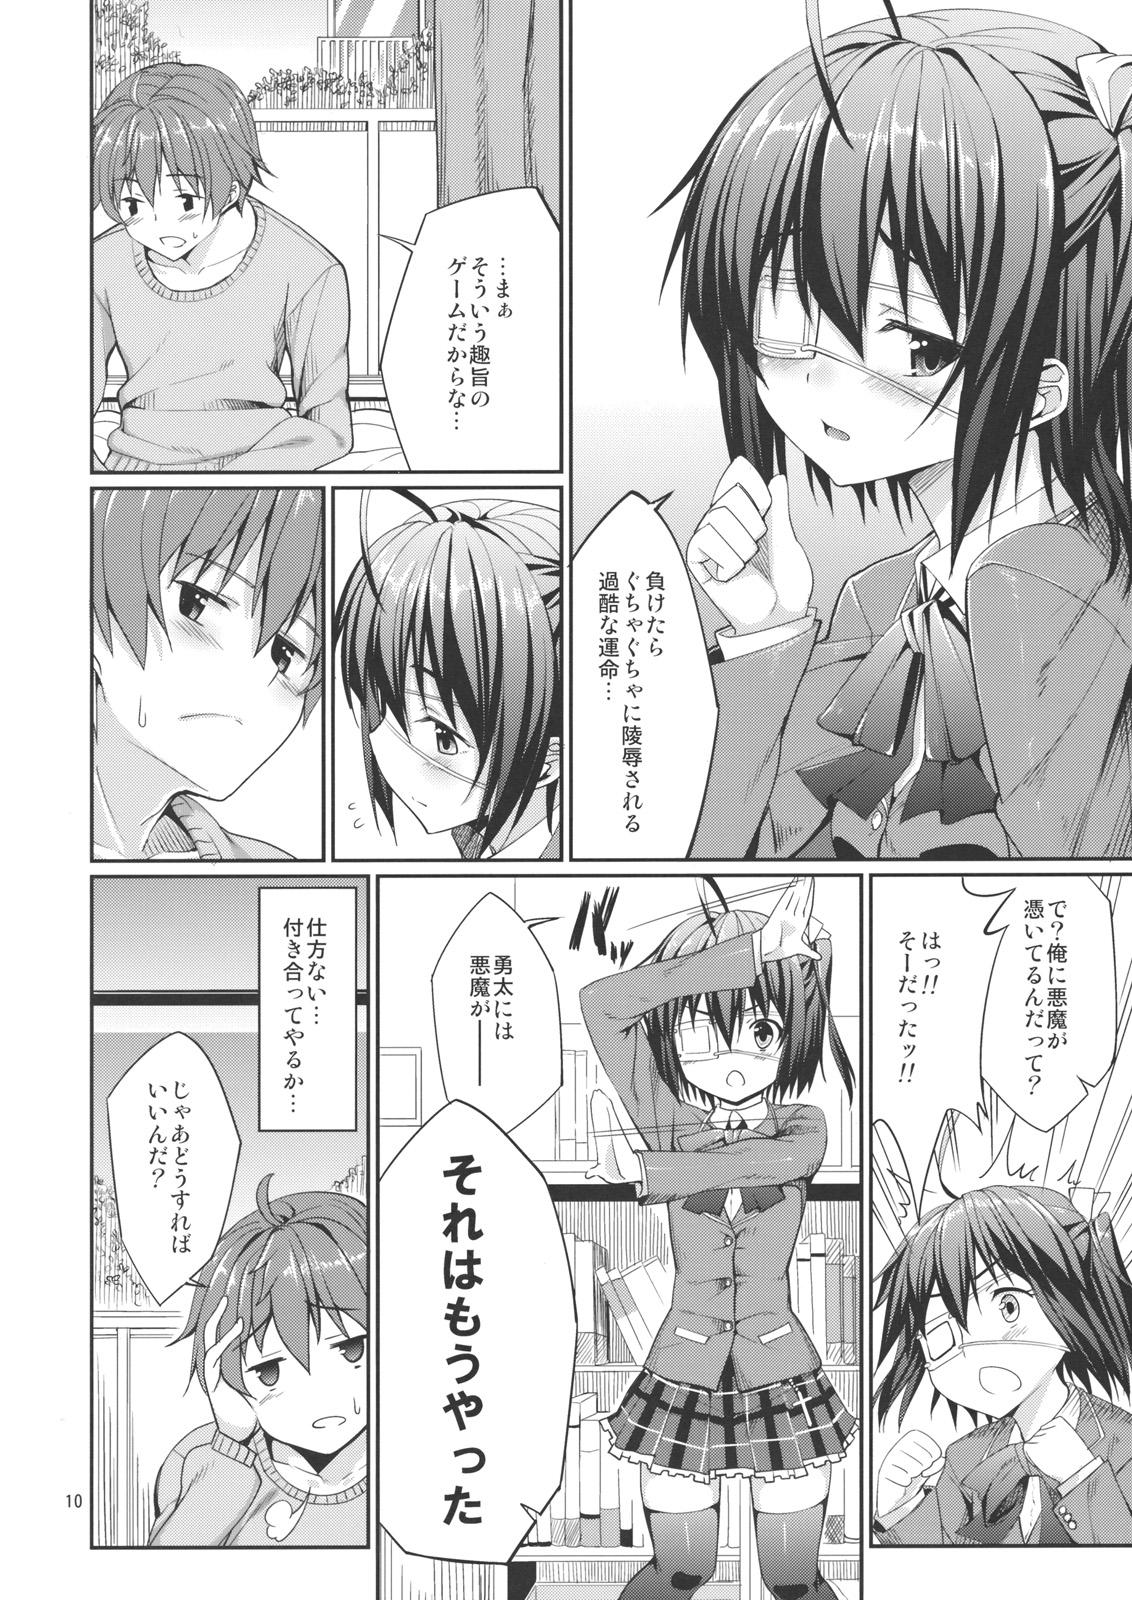 Girl Rikka to Shokushu to Mousou Settei! - Chuunibyou demo koi ga shitai Cam - Page 9